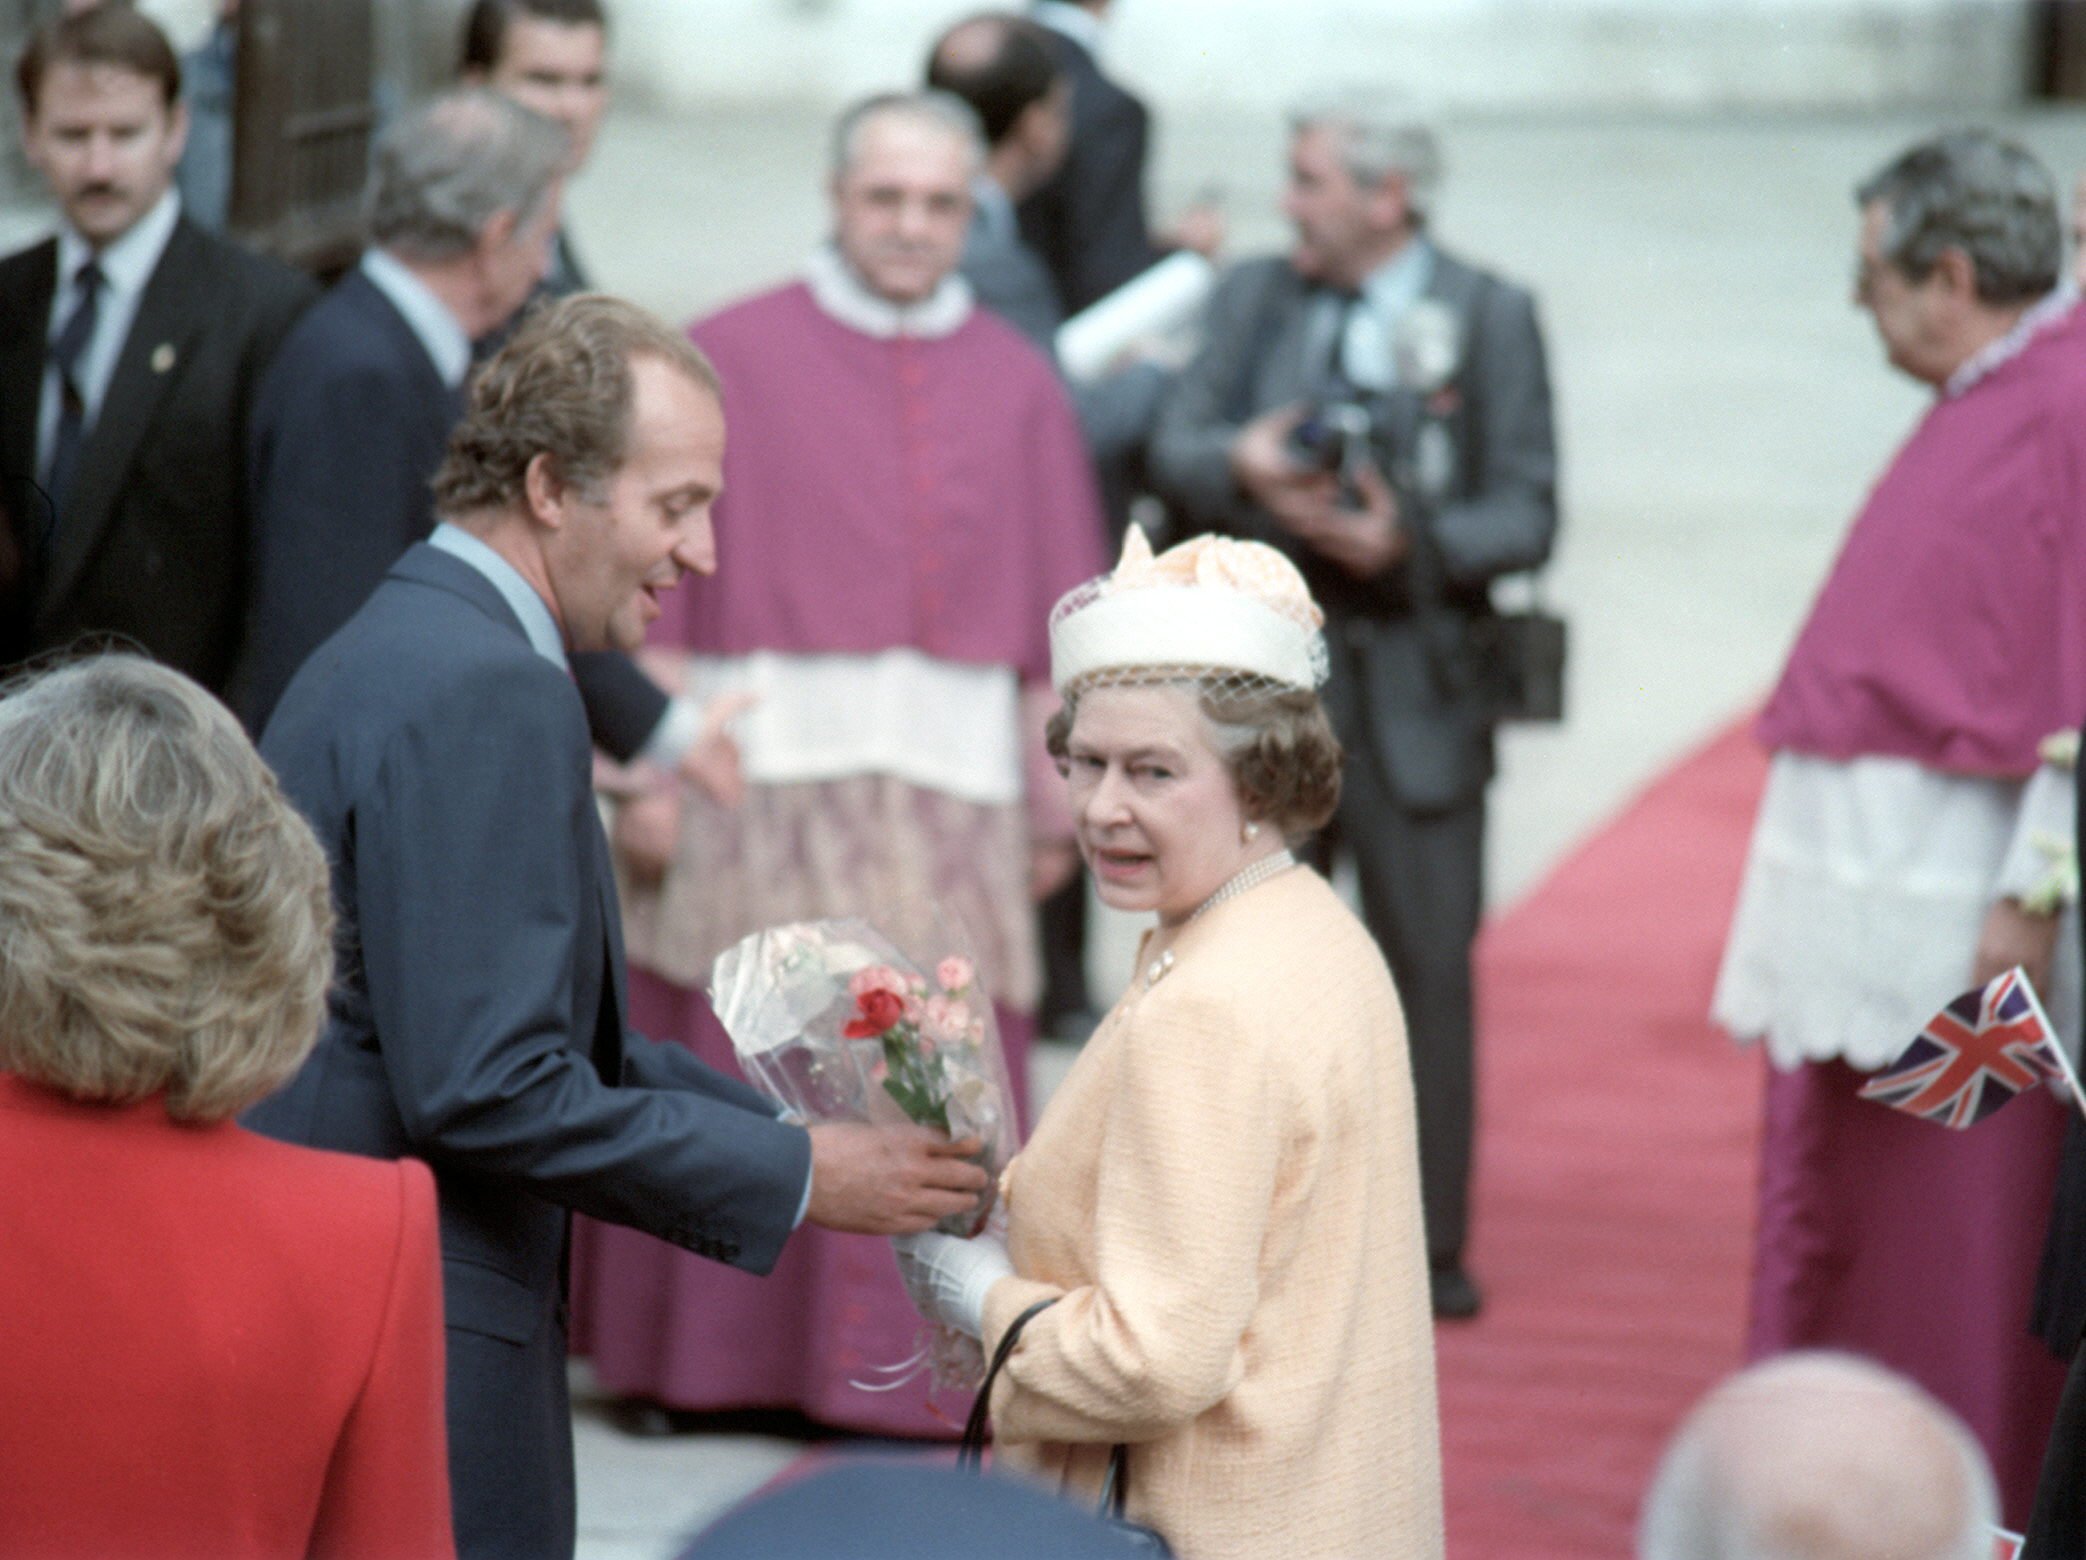 Anirà Joan Carles I al funeral d'Elisabet II?